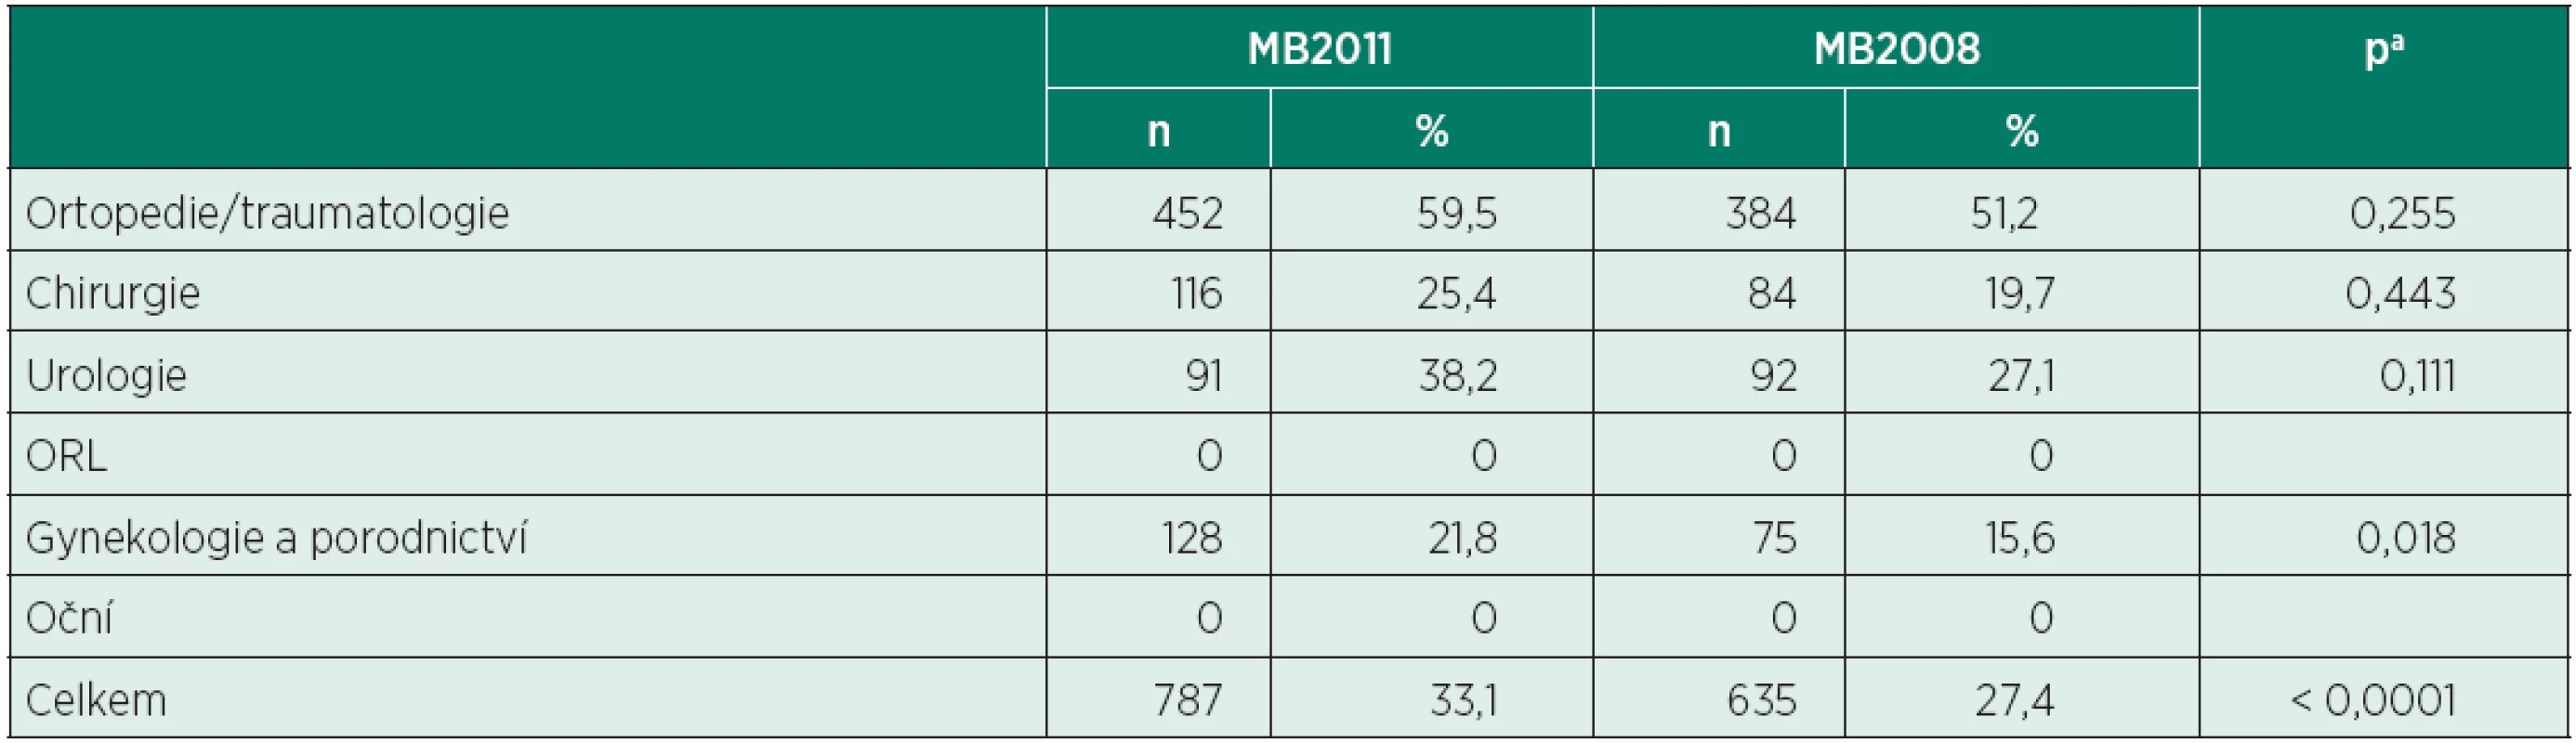 Počty regionálních anestezií ve vybraných oborech (MB2011 vs. MB2008)